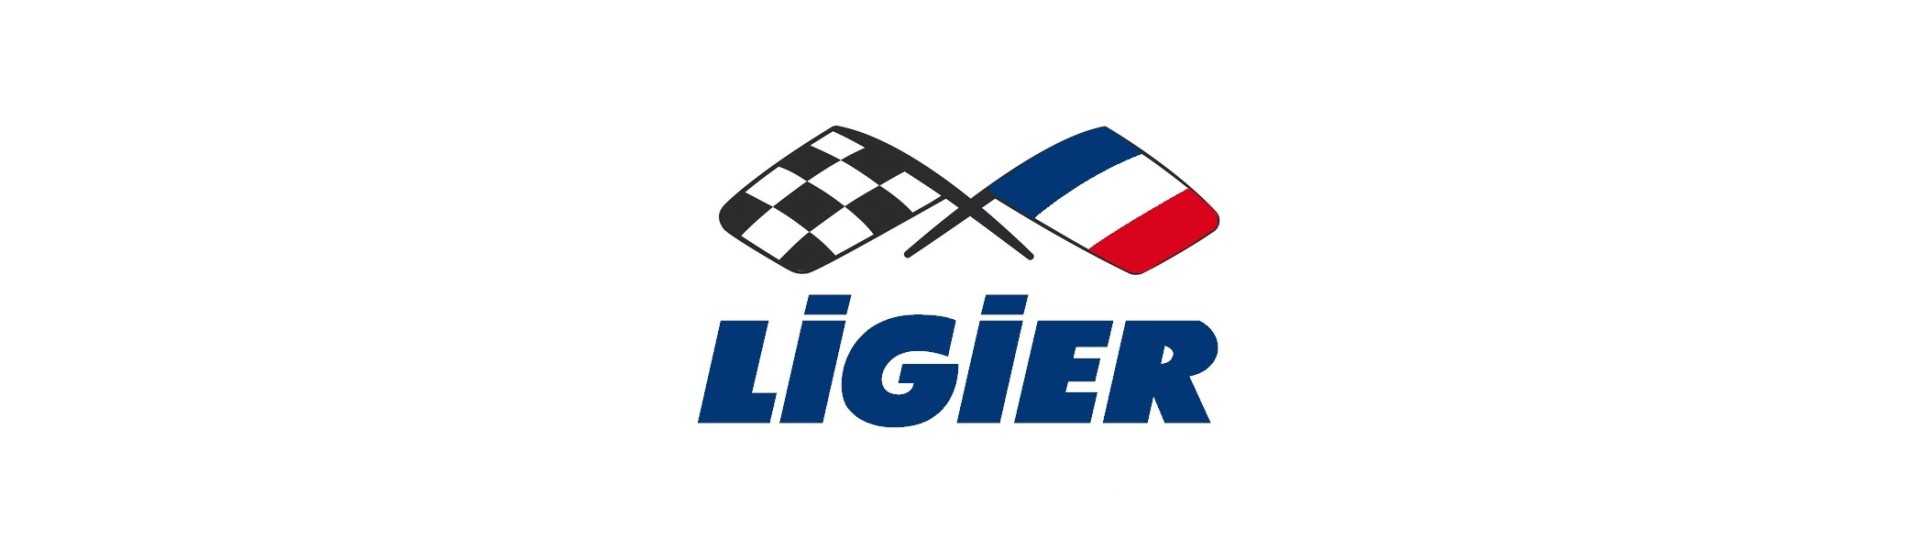 Relais / elektronische module für auto ohne lizenz Ligier